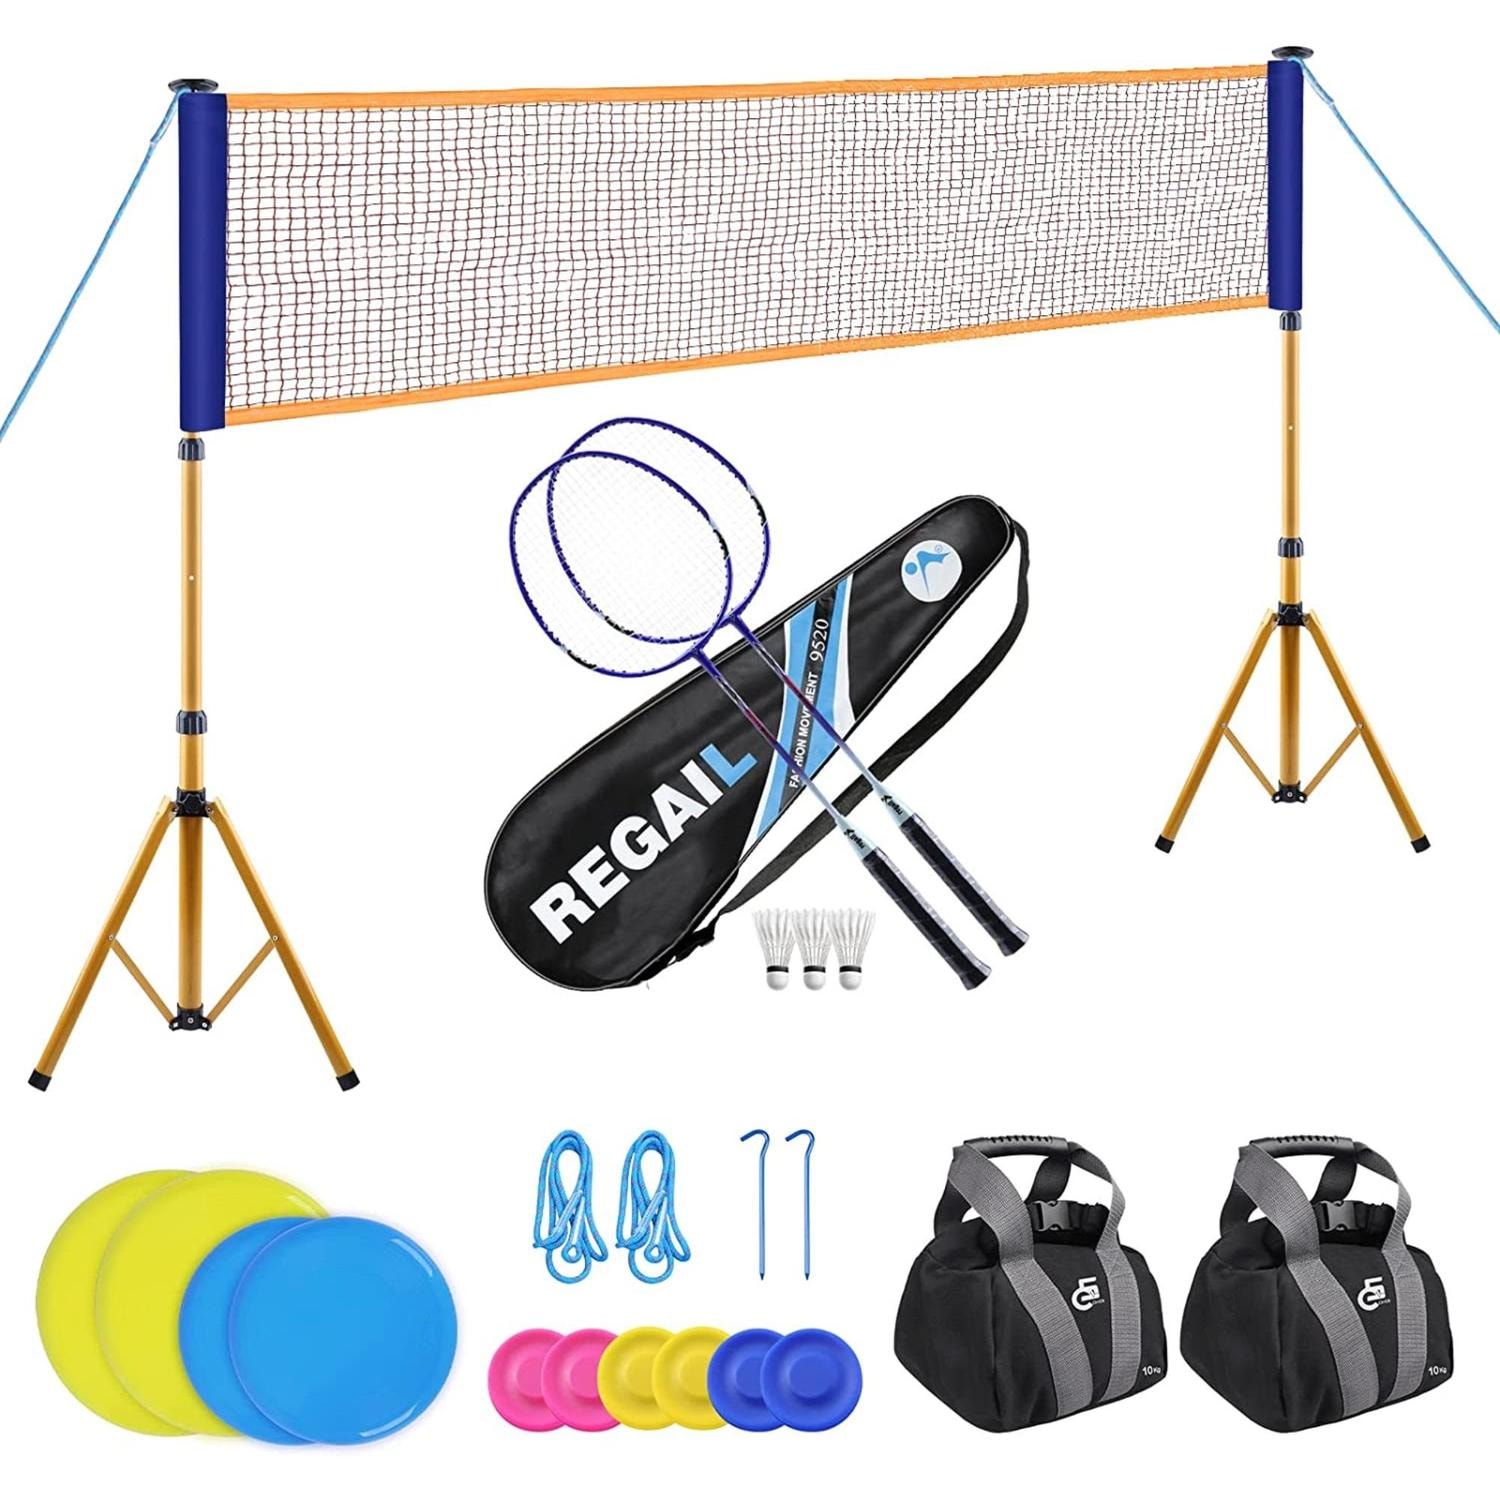 Komplett set för badminton och frisbee (inkl monteringsvikter för nätet) (5 av 6)